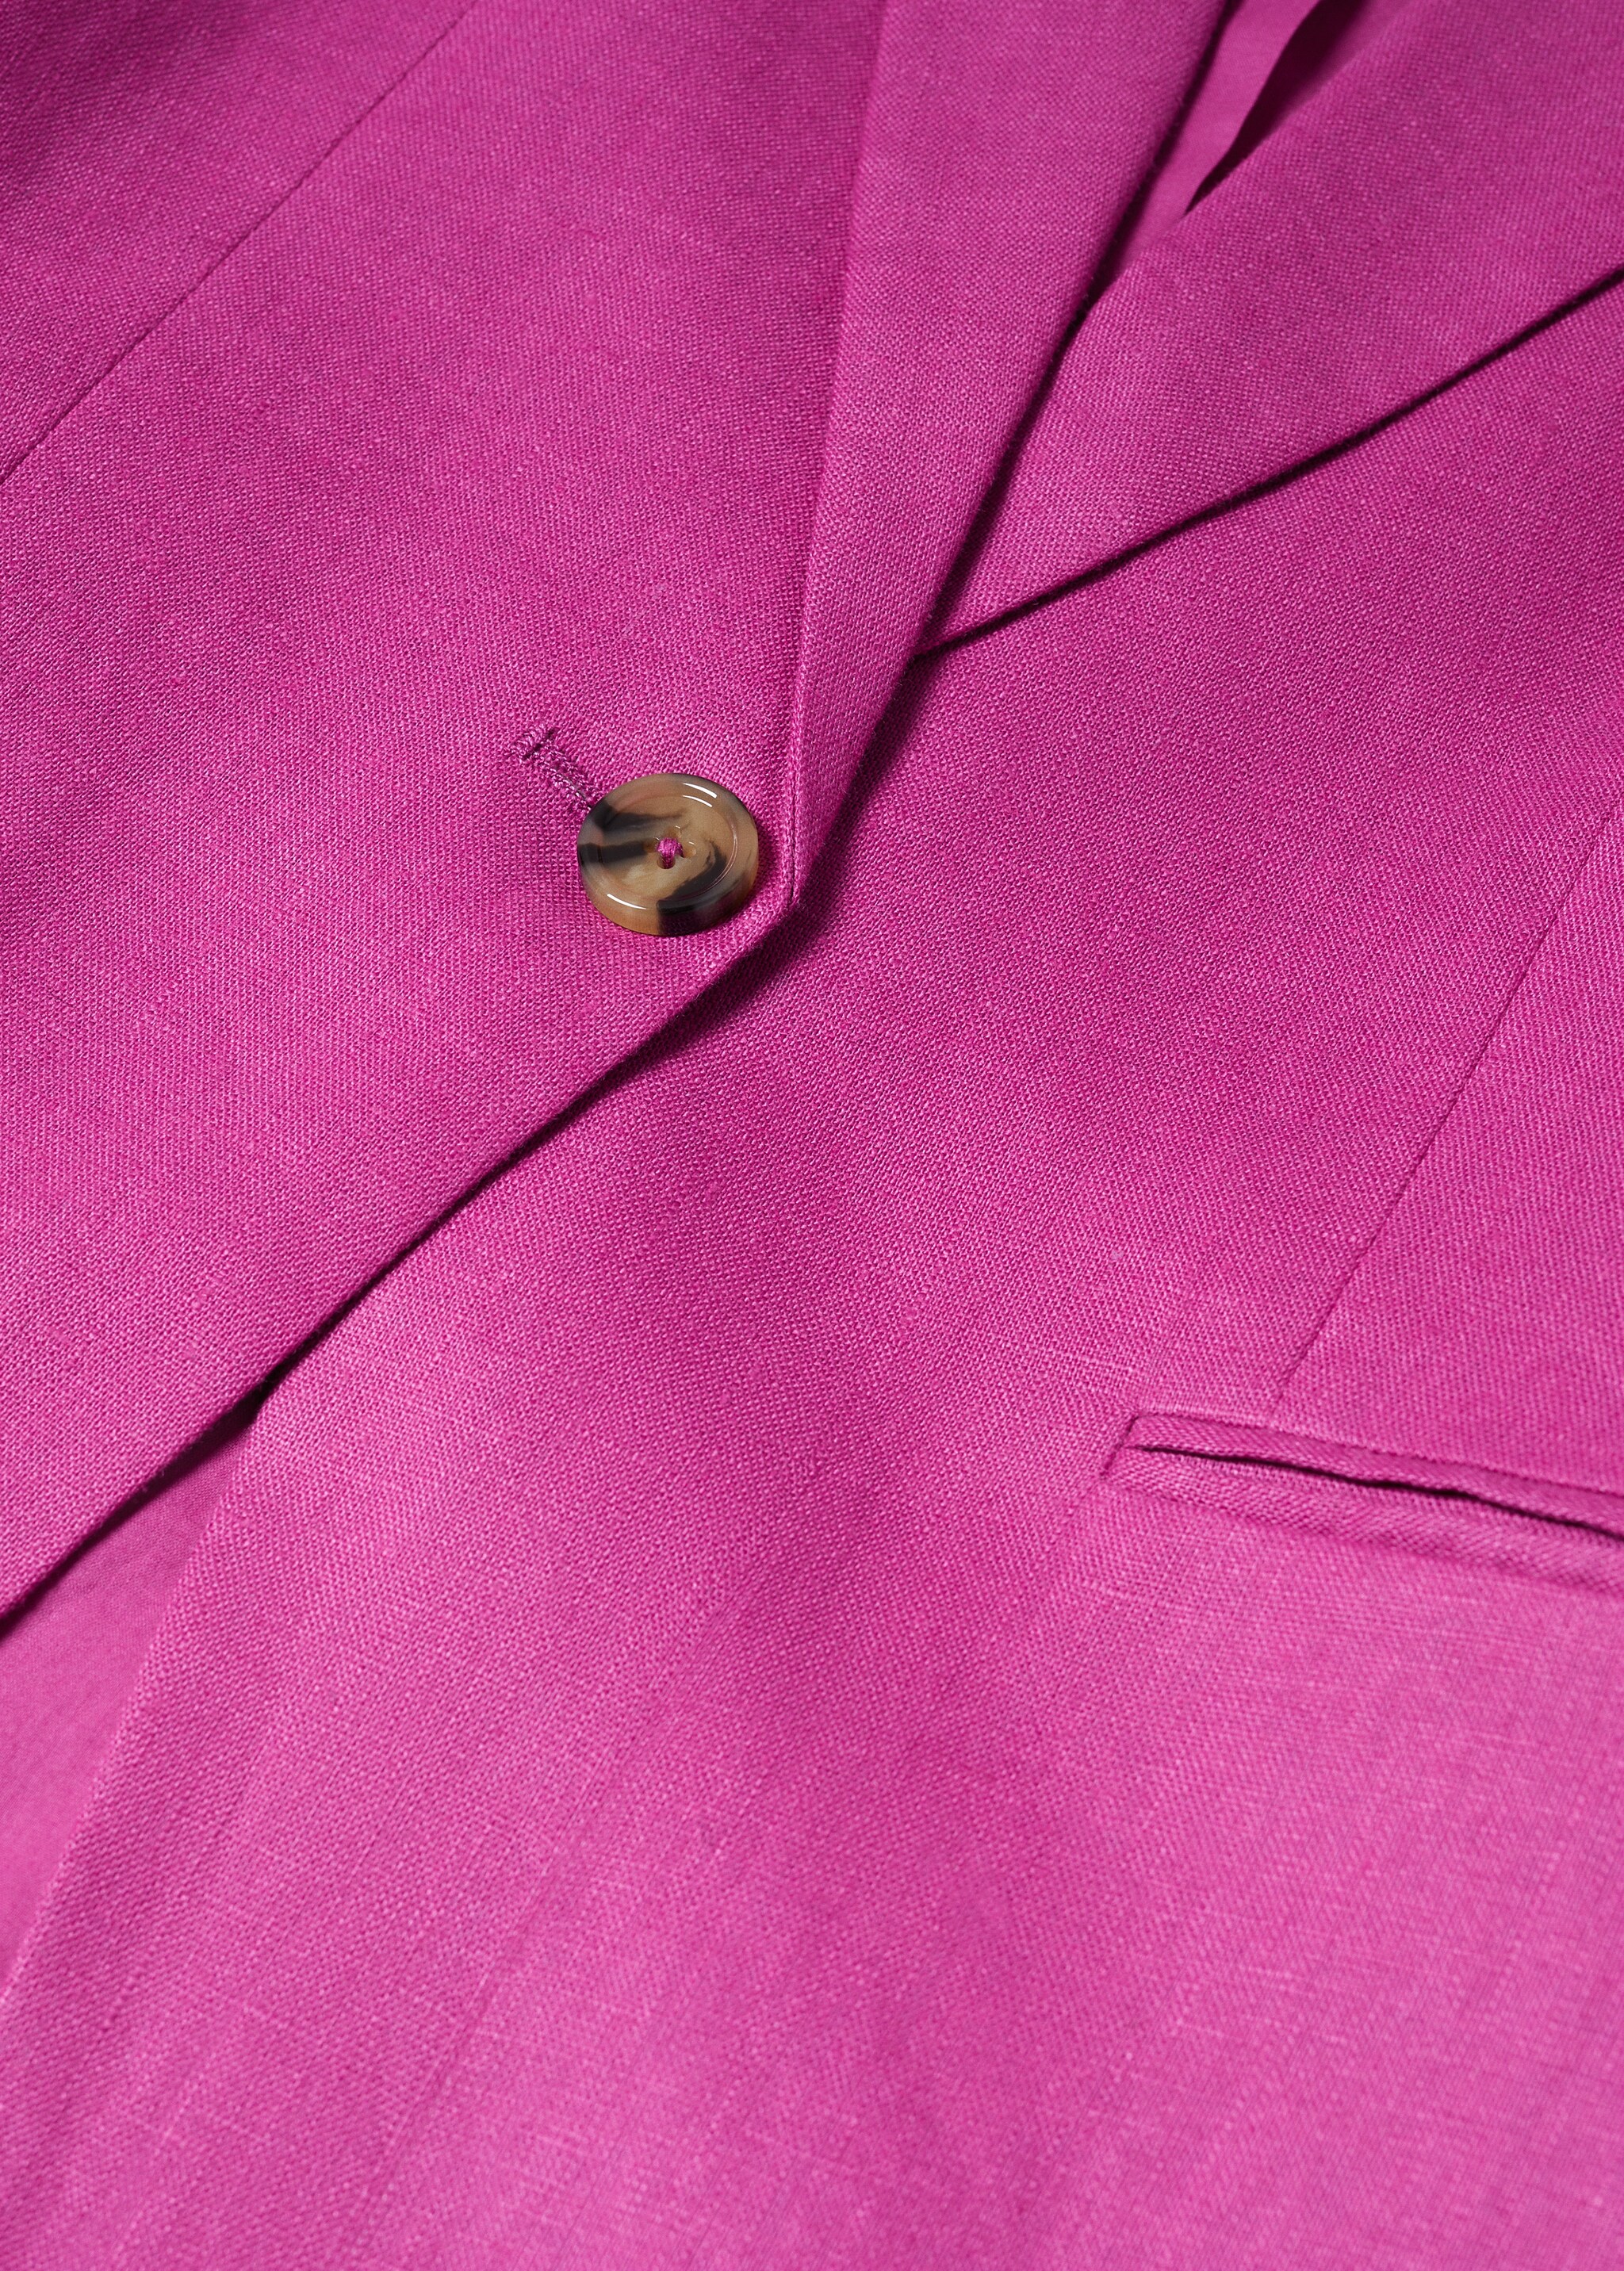 Blazer suit 100% linen - Details of the article 8